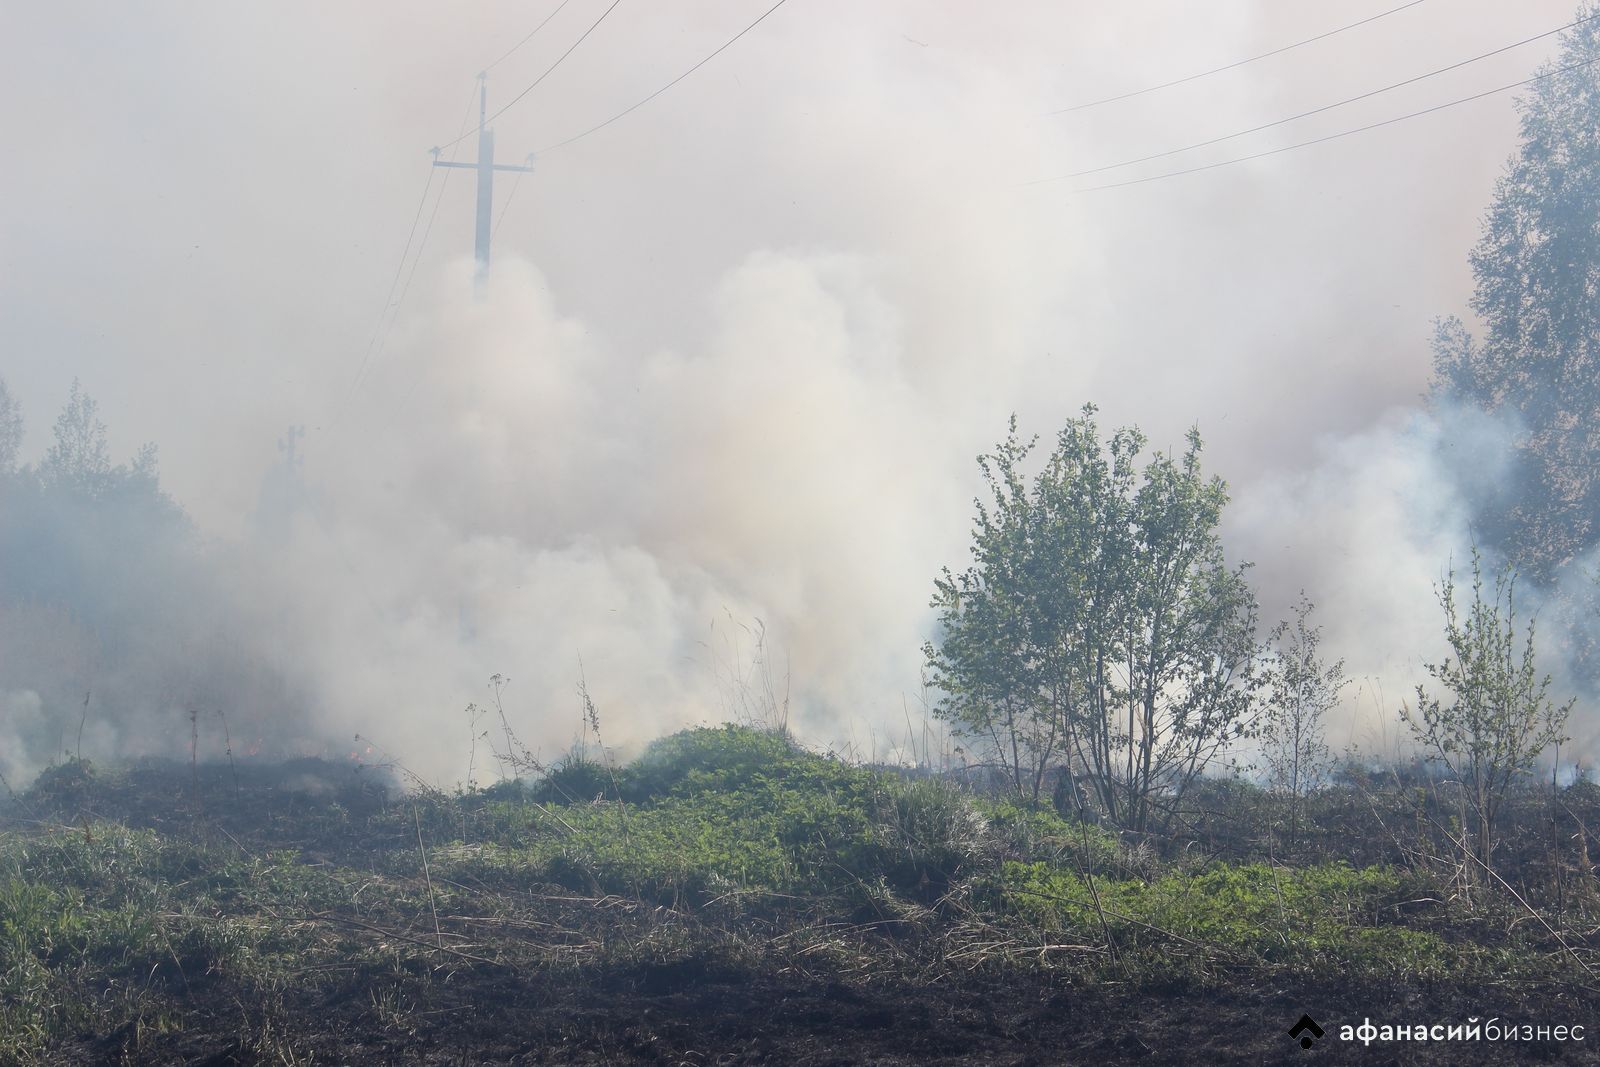 Отделения нескольких пожарных частей борются с огнем на поле в деревне Тверской области